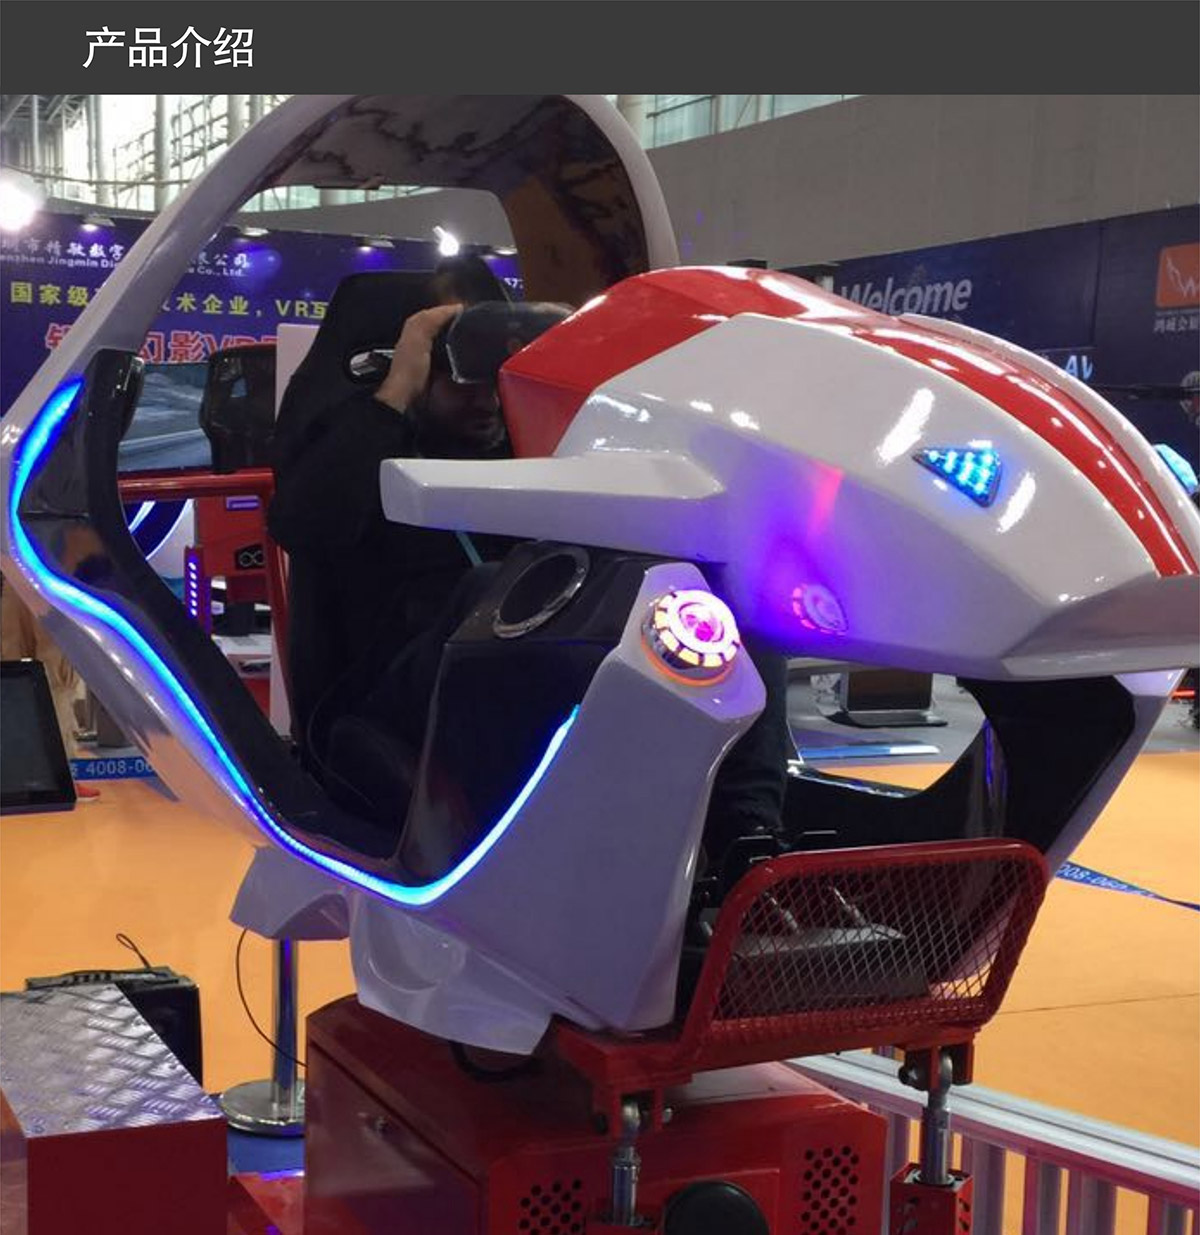 安全体验VR飞行赛车产品介绍.jpg